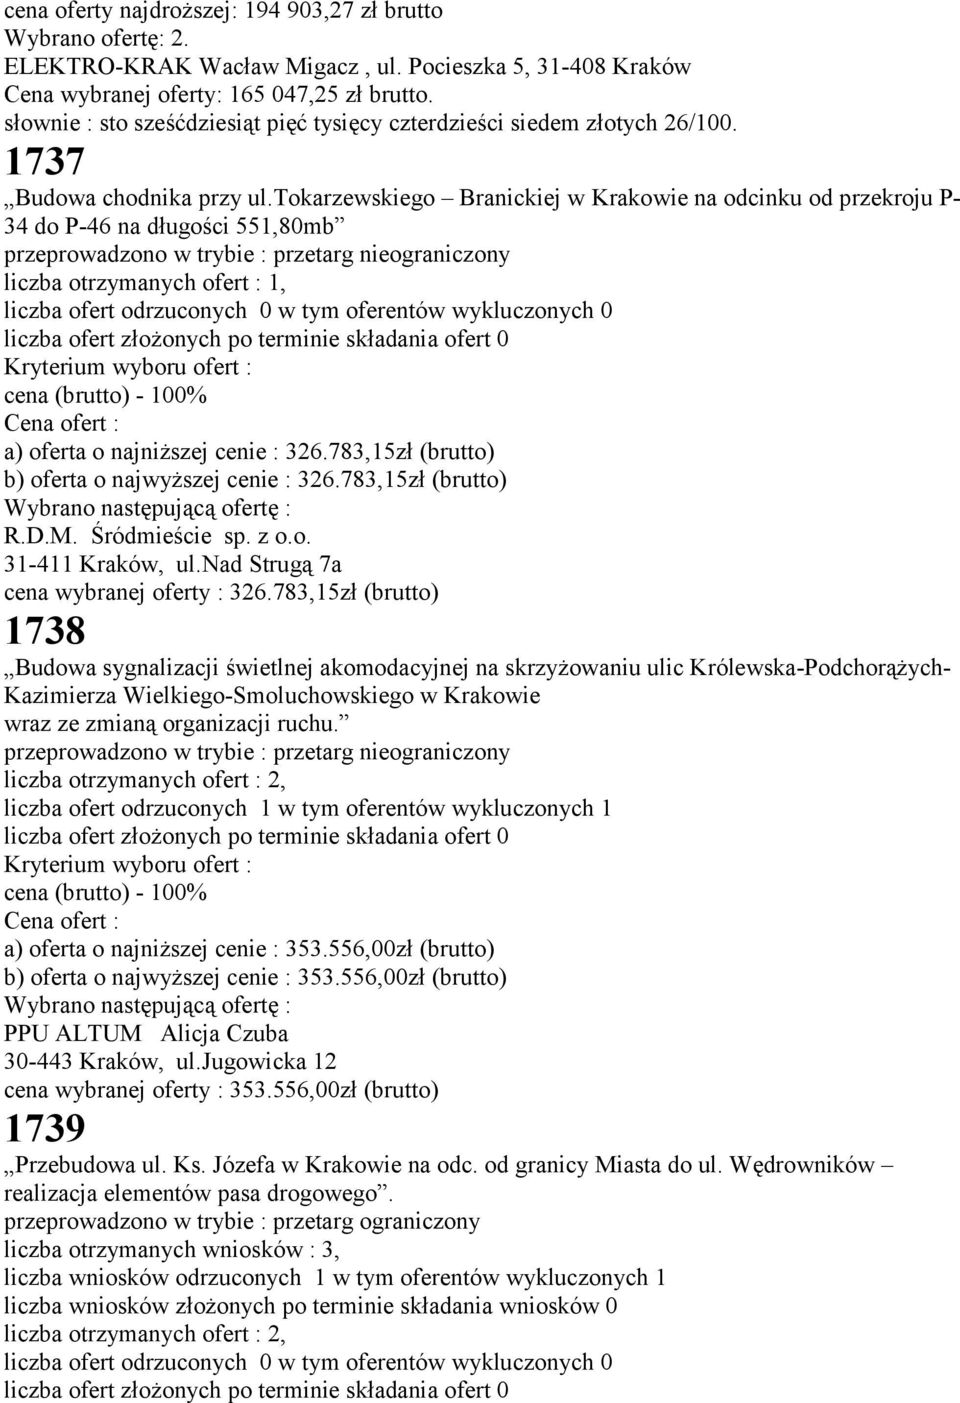 tokarzewskiego Branickiej w Krakowie na odcinku od przekroju P- 34 do P-46 na długości 551,80mb przeprowadzono w trybie : przetarg nieograniczony liczba otrzymanych ofert : 1, liczba ofert